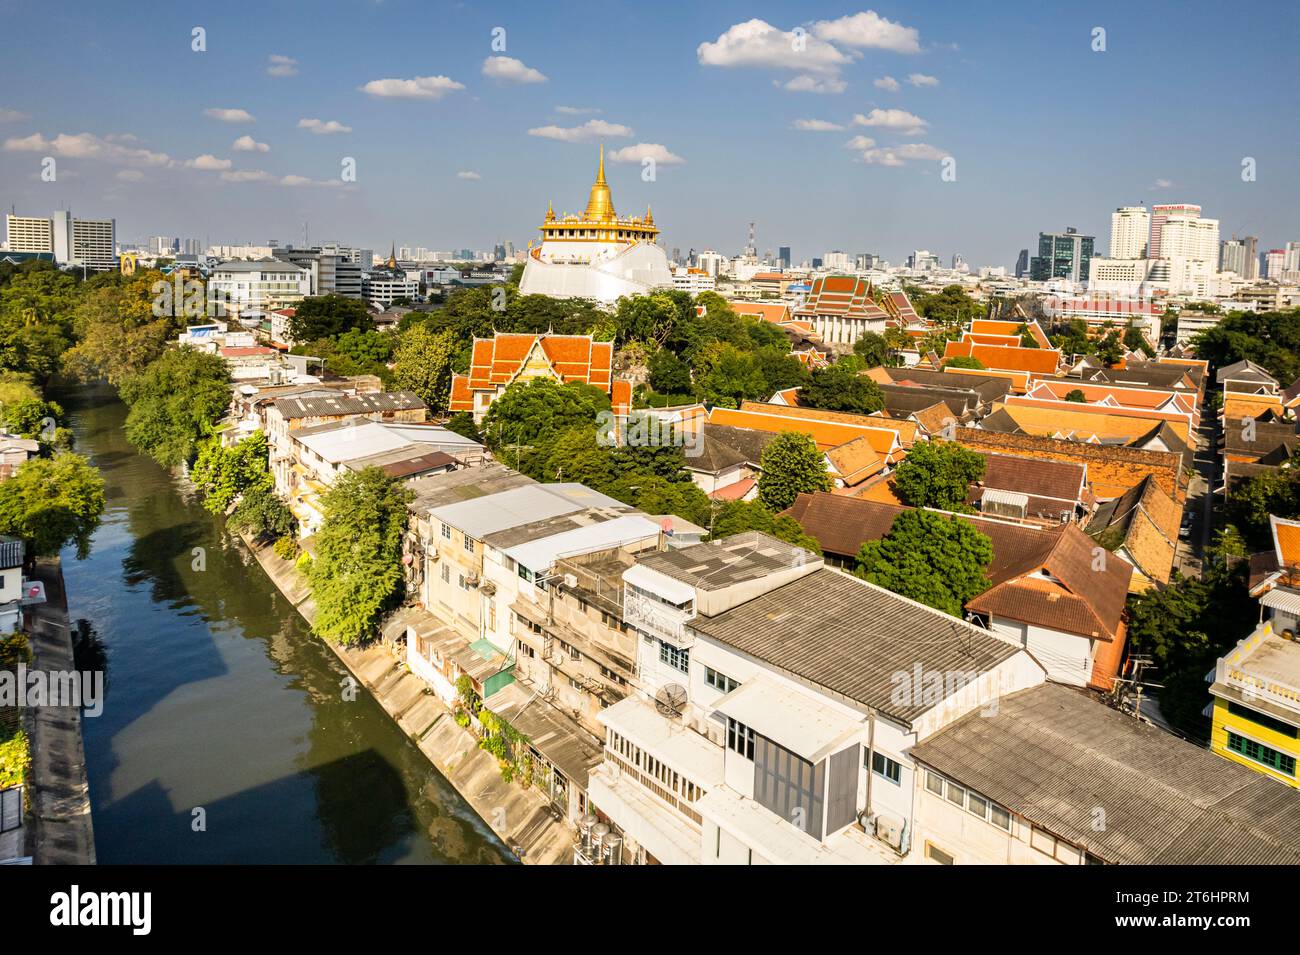 Thailand, Bangkok, the Golden Mount Temple Stock Photo